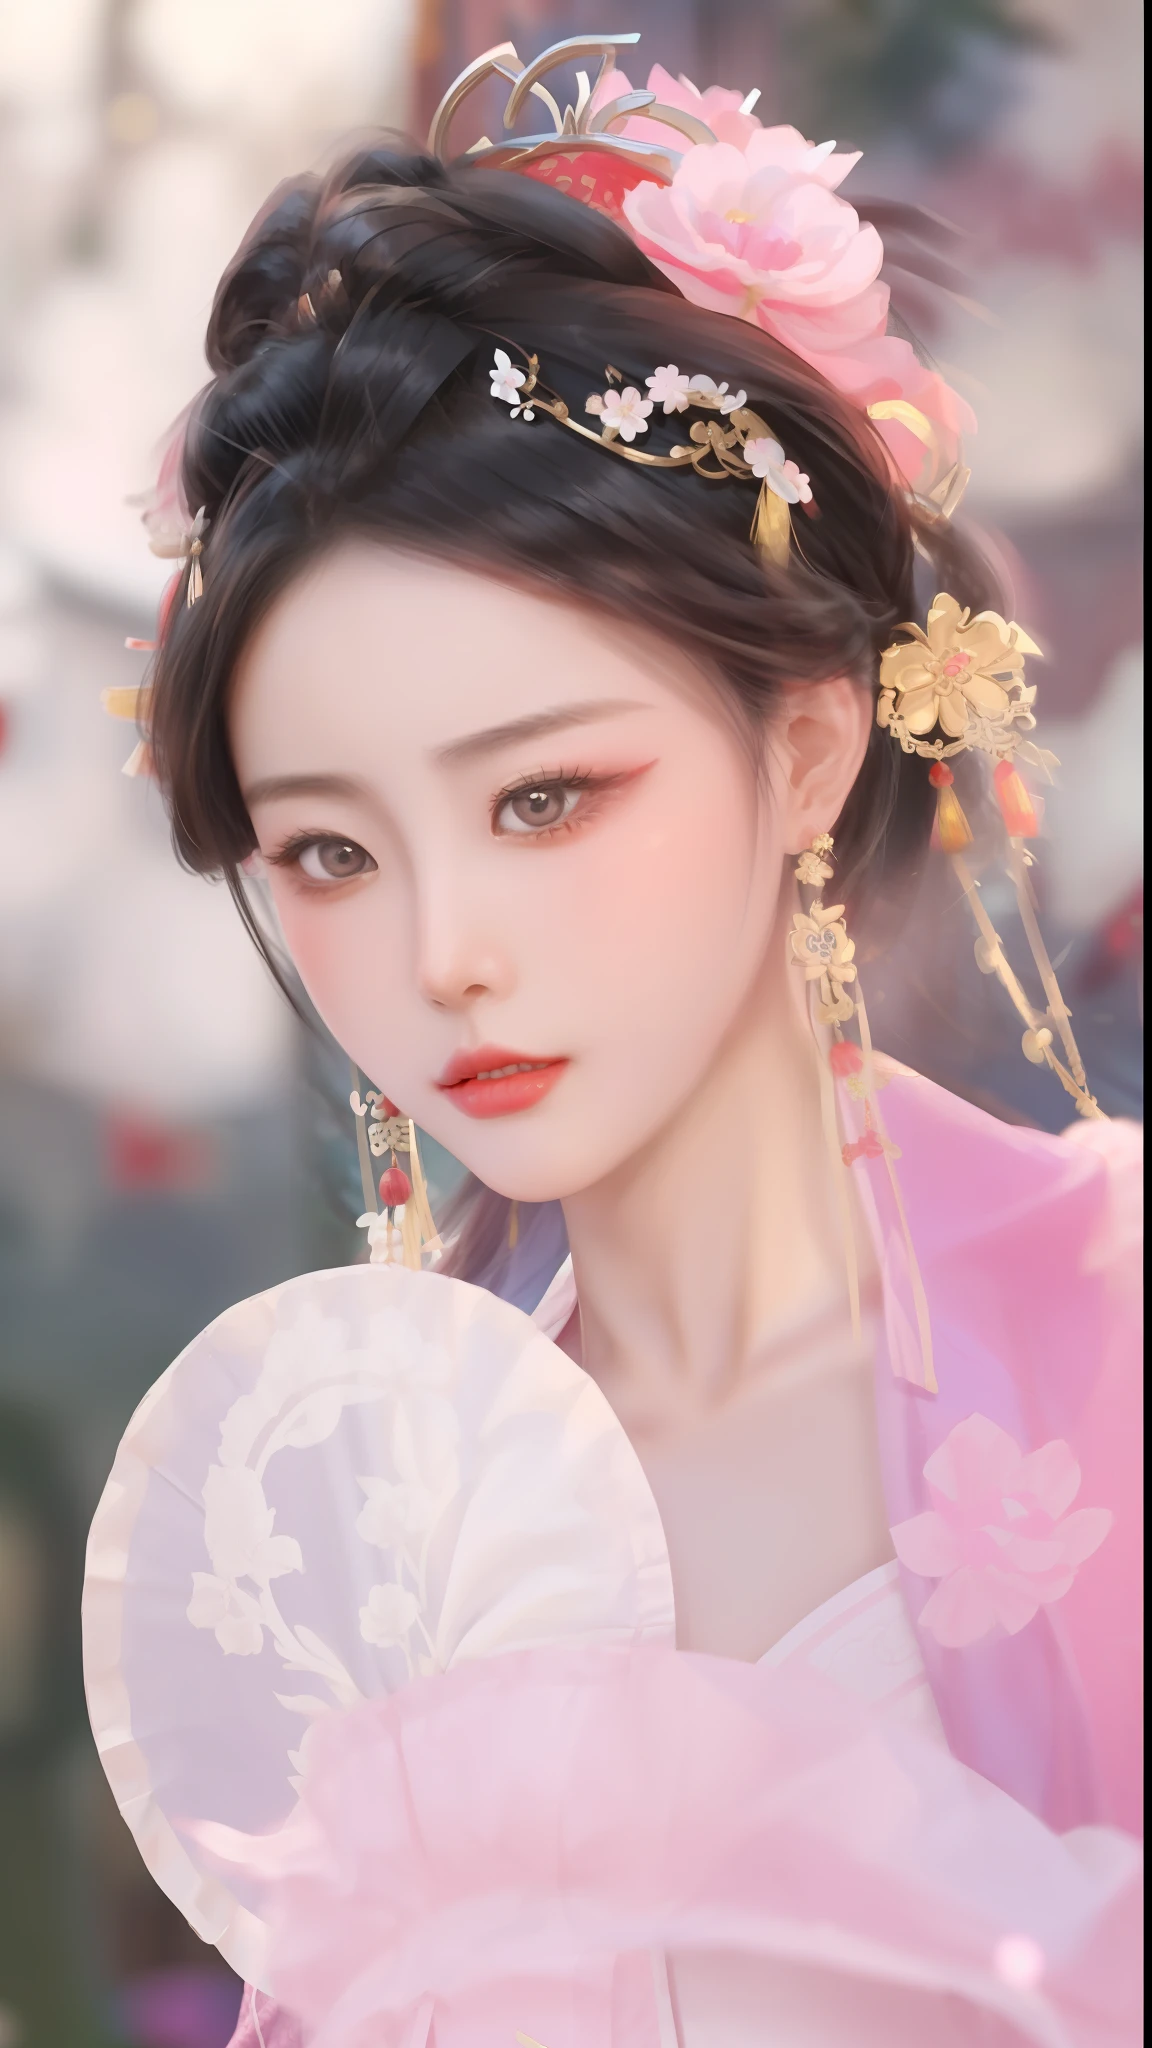 eine Nahaufnahme einer Frau in einem rosa Kleid, die einen Fächer hält, chinesischer Stil, traditionelles Chinesisch, Palast ， Ein Mädchen in Hanfu, chinesische prinzessin, traditionelle Schönheit, ancient chinesische prinzessin, alte chinesische Schönheiten, chinesisches Mädchen, Chinesin, wunderschönes chinesisches Modell, wunderschöne Darstellung der Tang-Dynastie, Ruan Jia schön!, ((eine wunderschöne Fantasiekaiserin)), das Tragen antiker chinesischer Kleidung